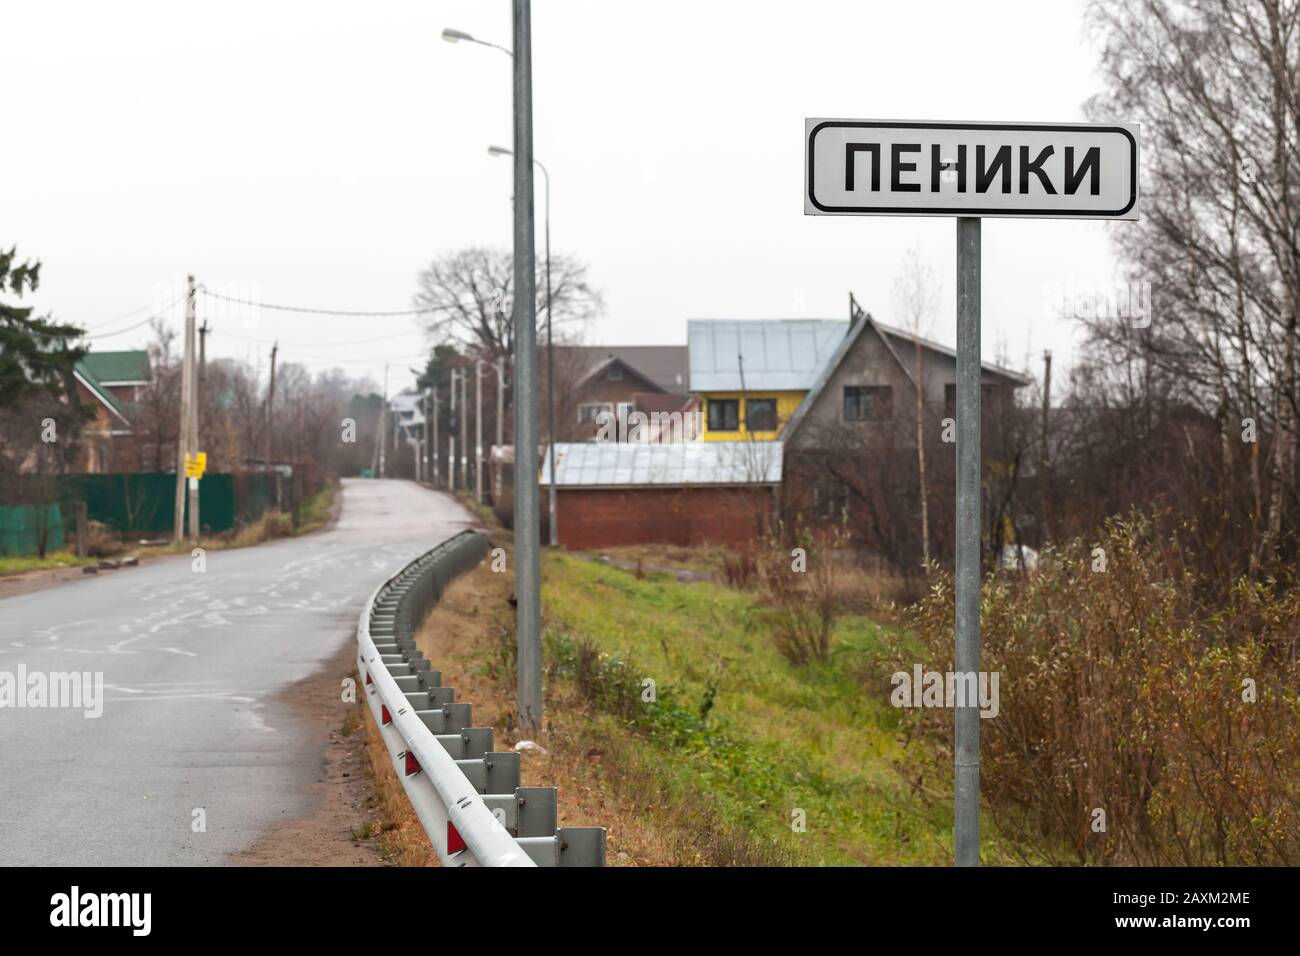 Peniki, Rusia - 11 de septiembre de 2019: Señal de carretera con nombre de pueblo urbano Peniki se encuentra cerca de la carretera rural rusa Foto de stock